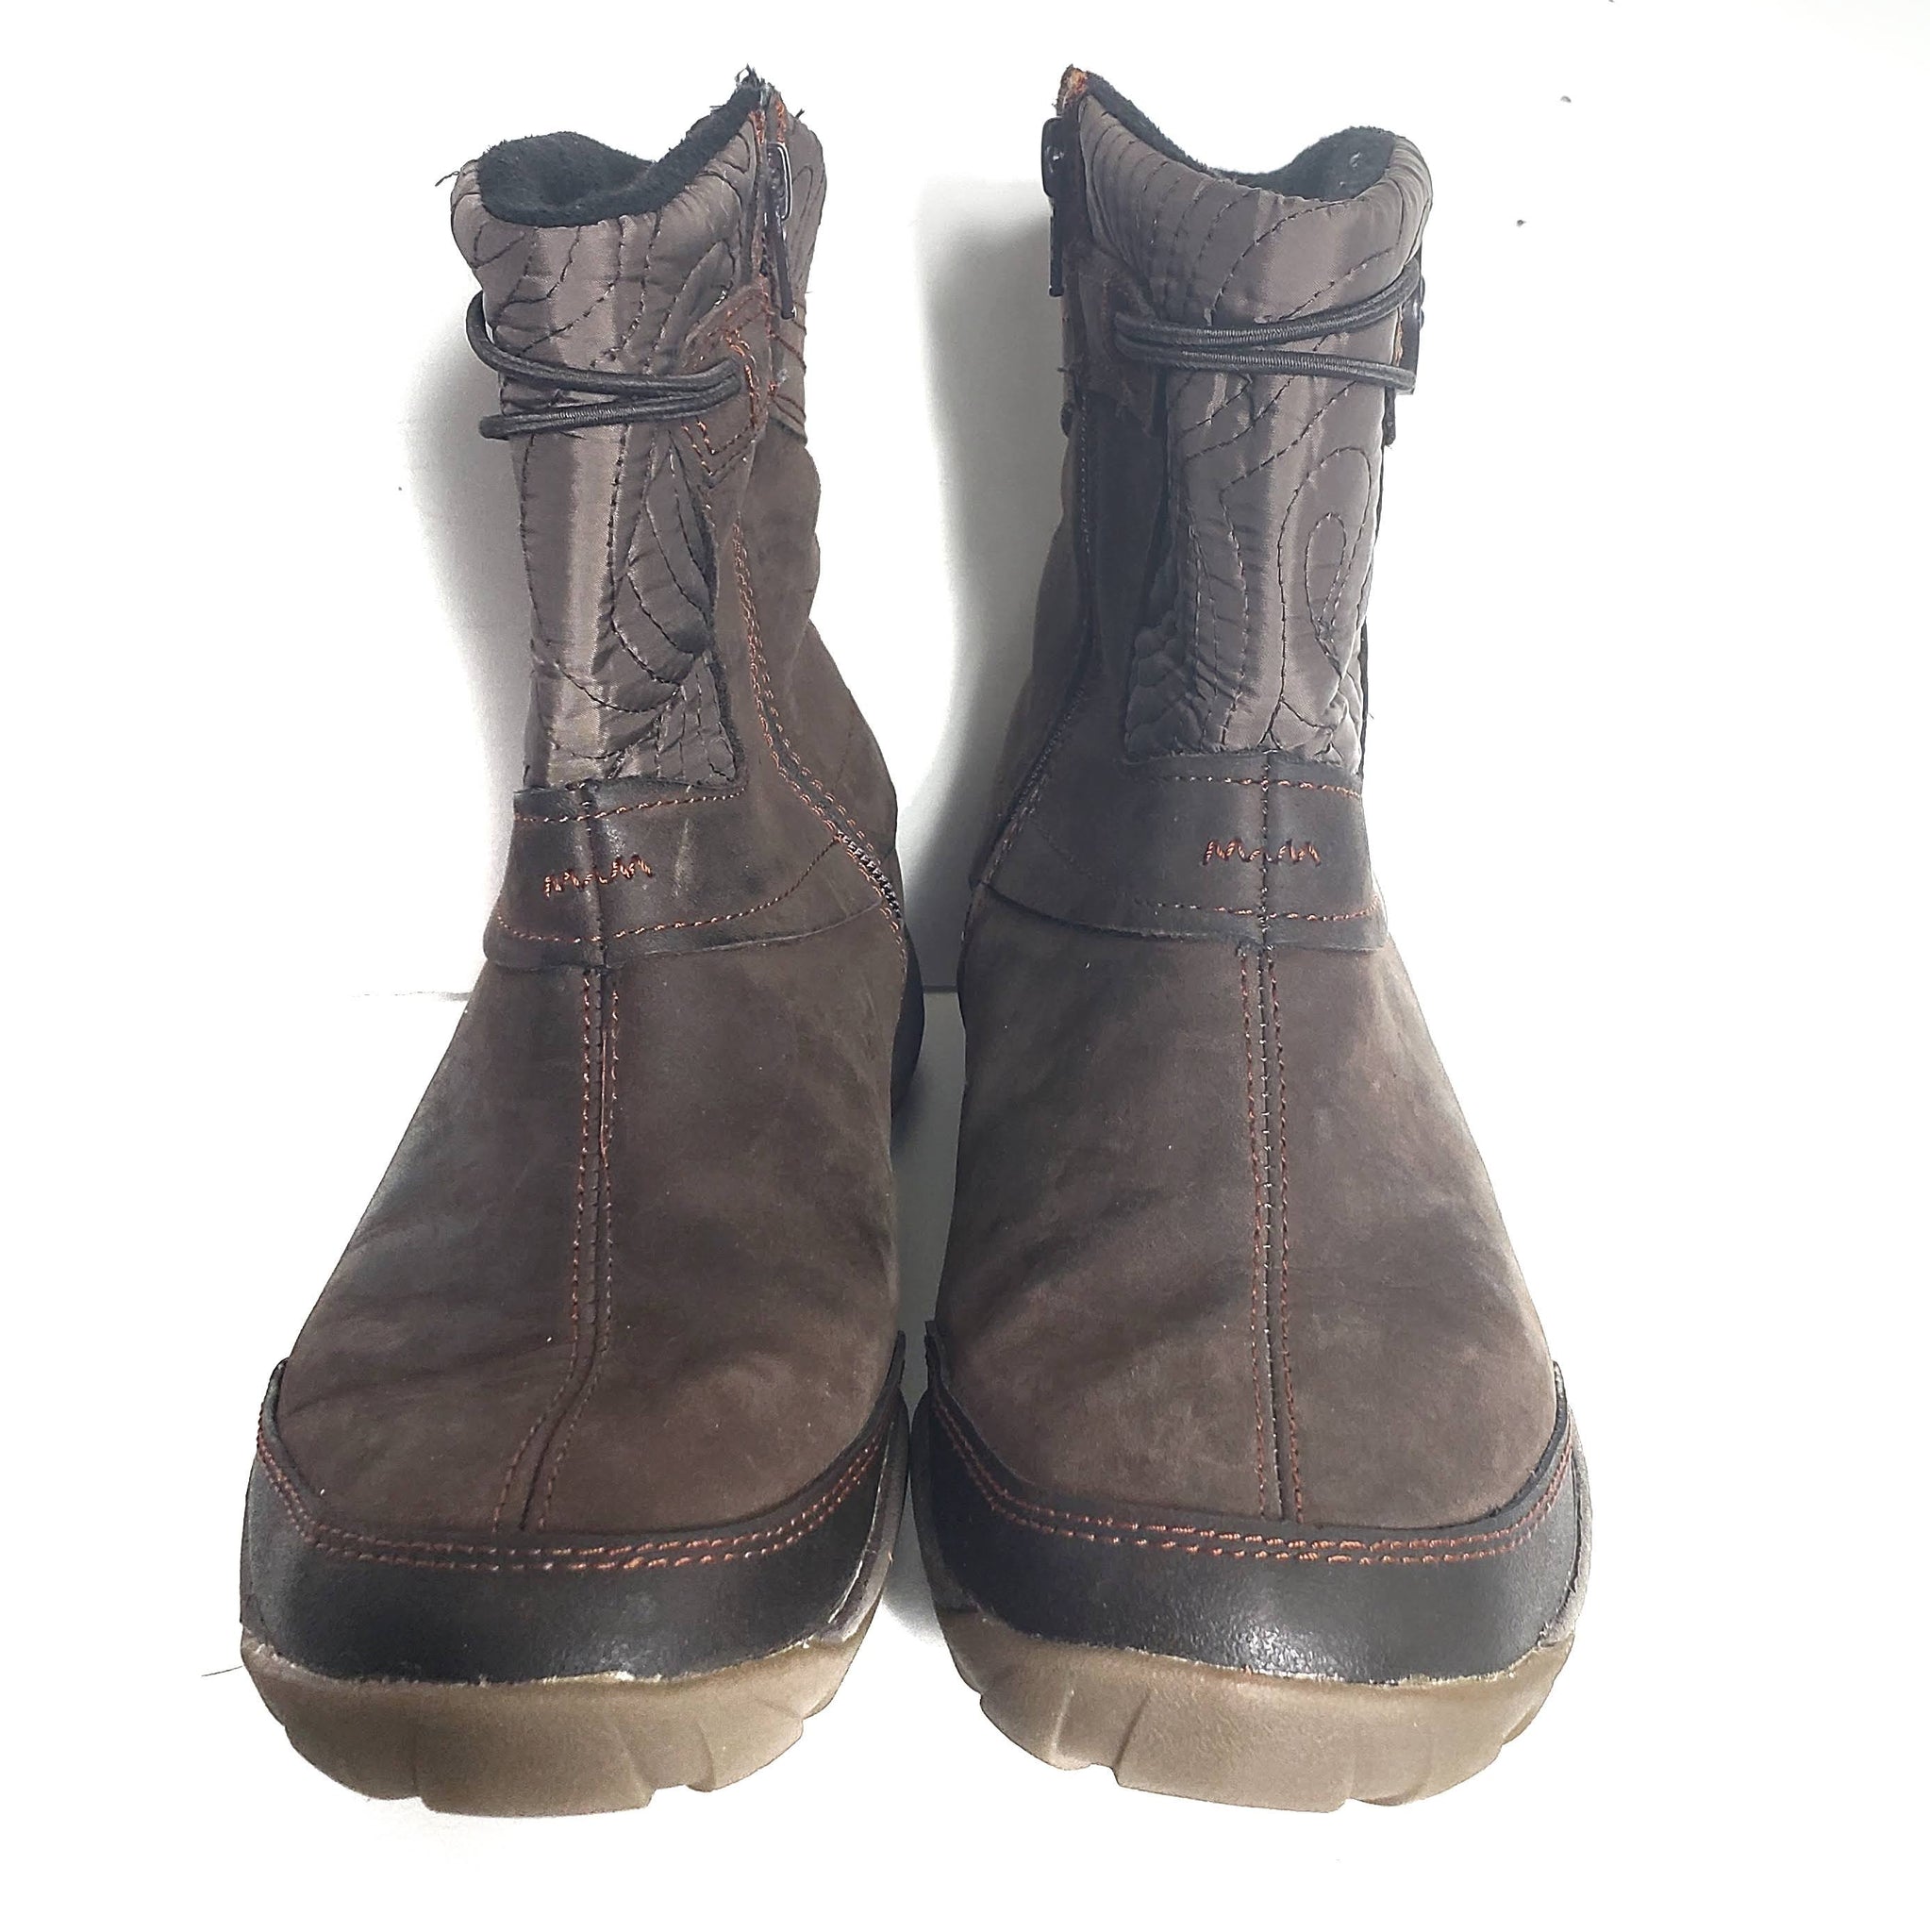 Merrell Dewbrook Winter Boots Size 8